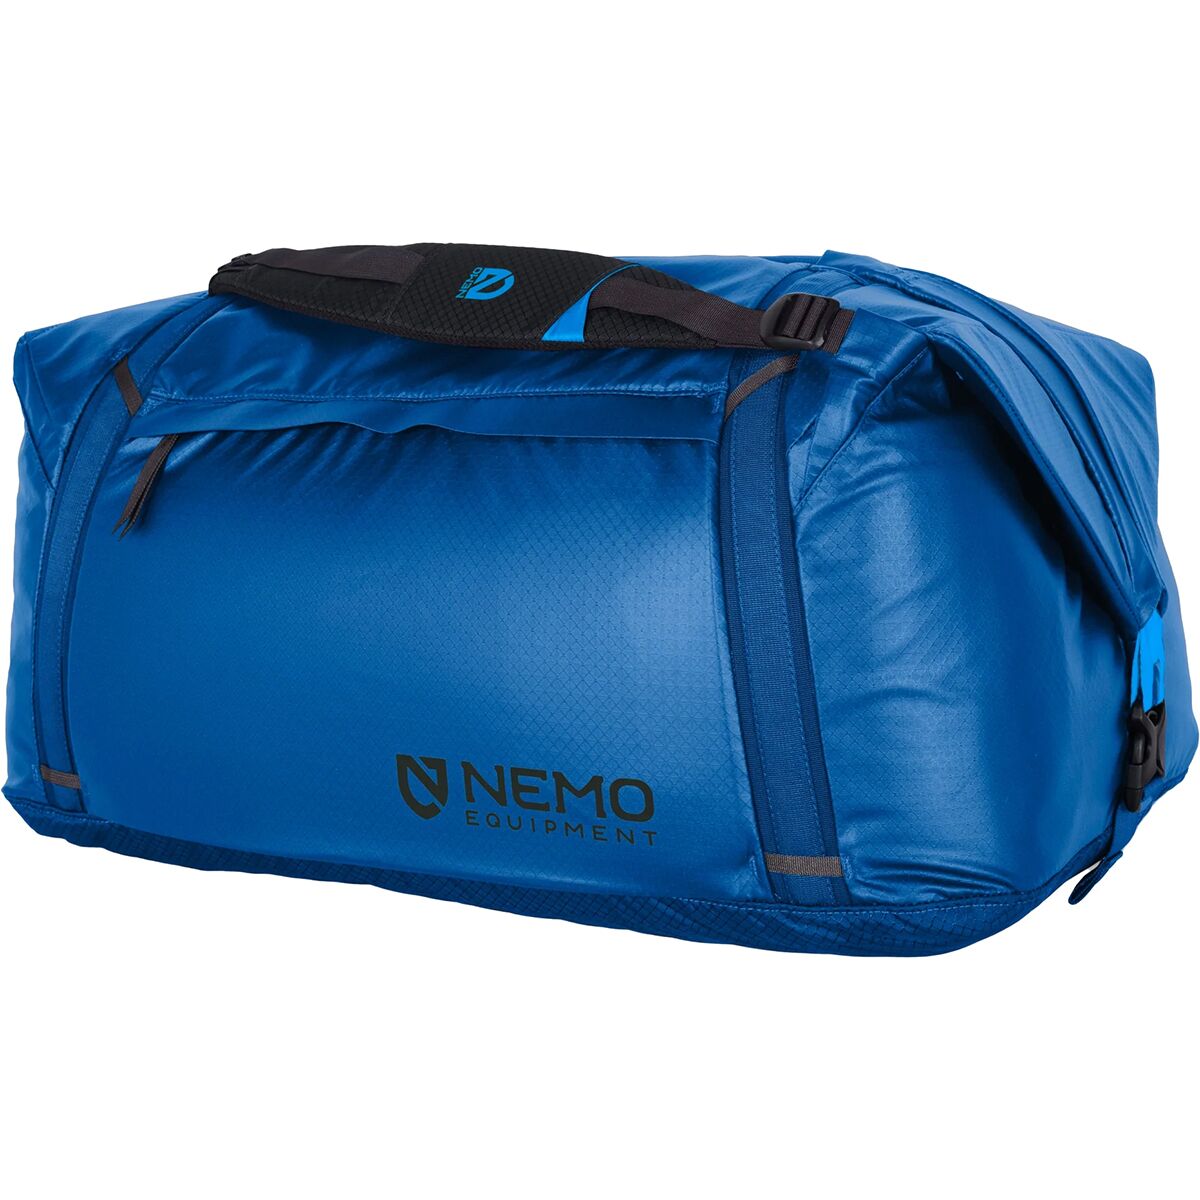 цена Двойная трансформируемая спортивная сумка объемом 100 л Nemo Equipment Inc., цвет lake